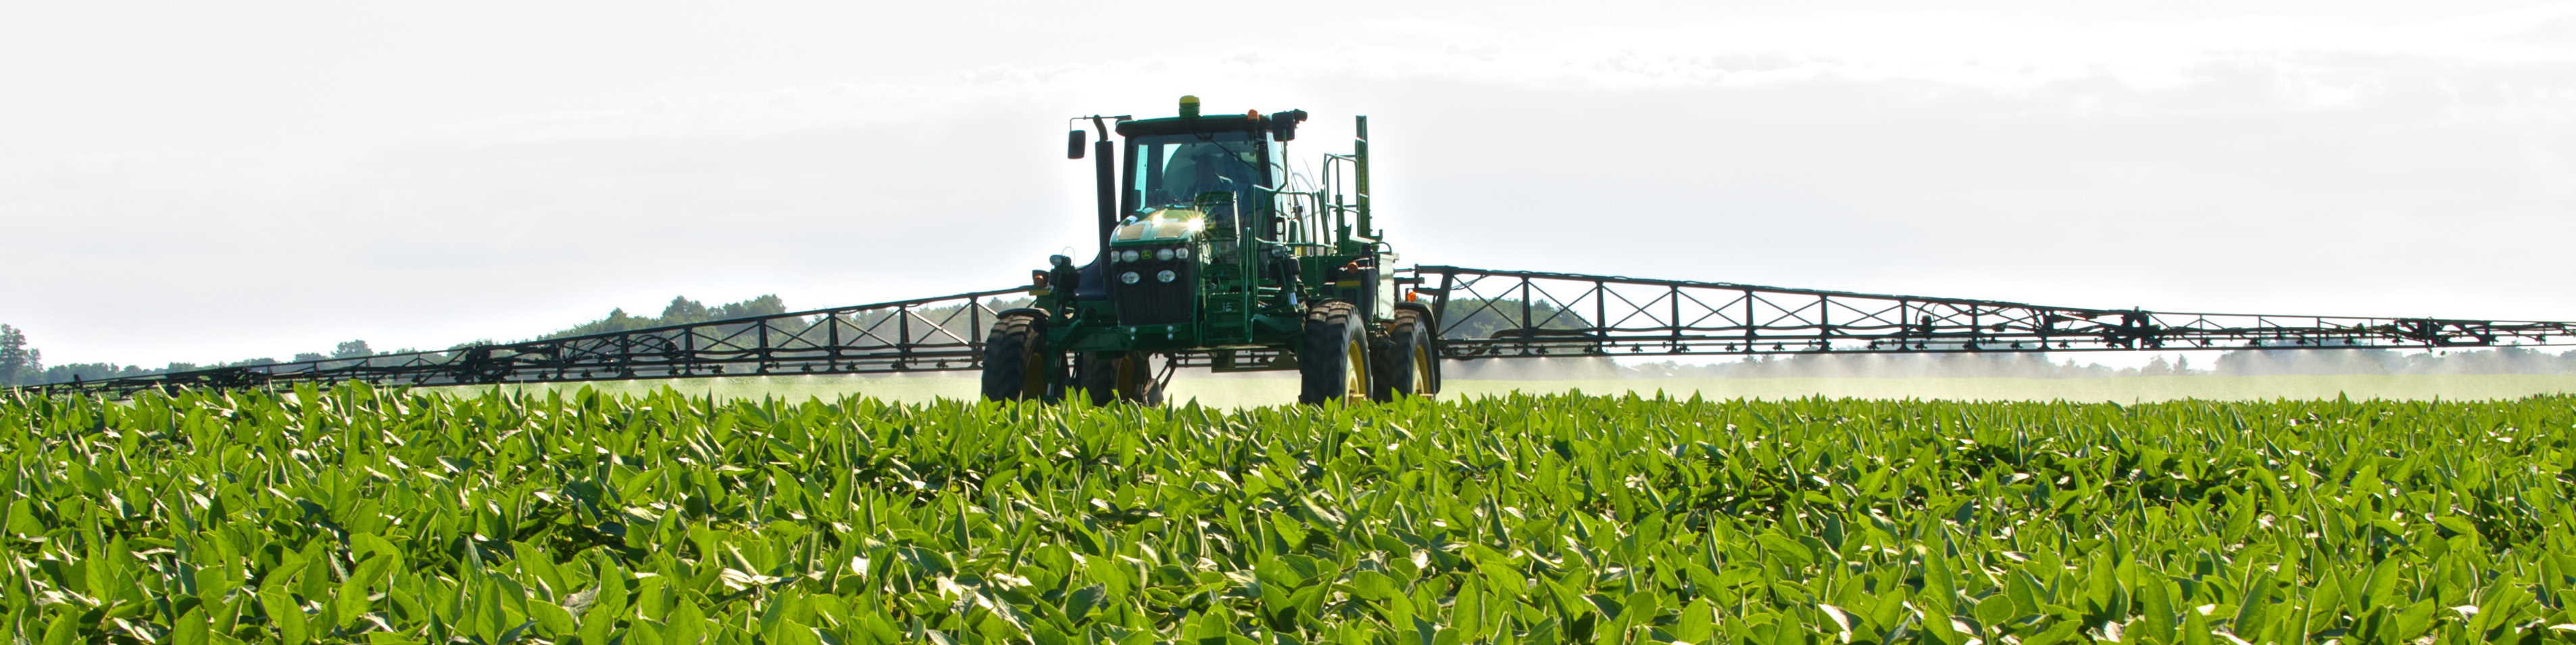 tractor in a soybean field